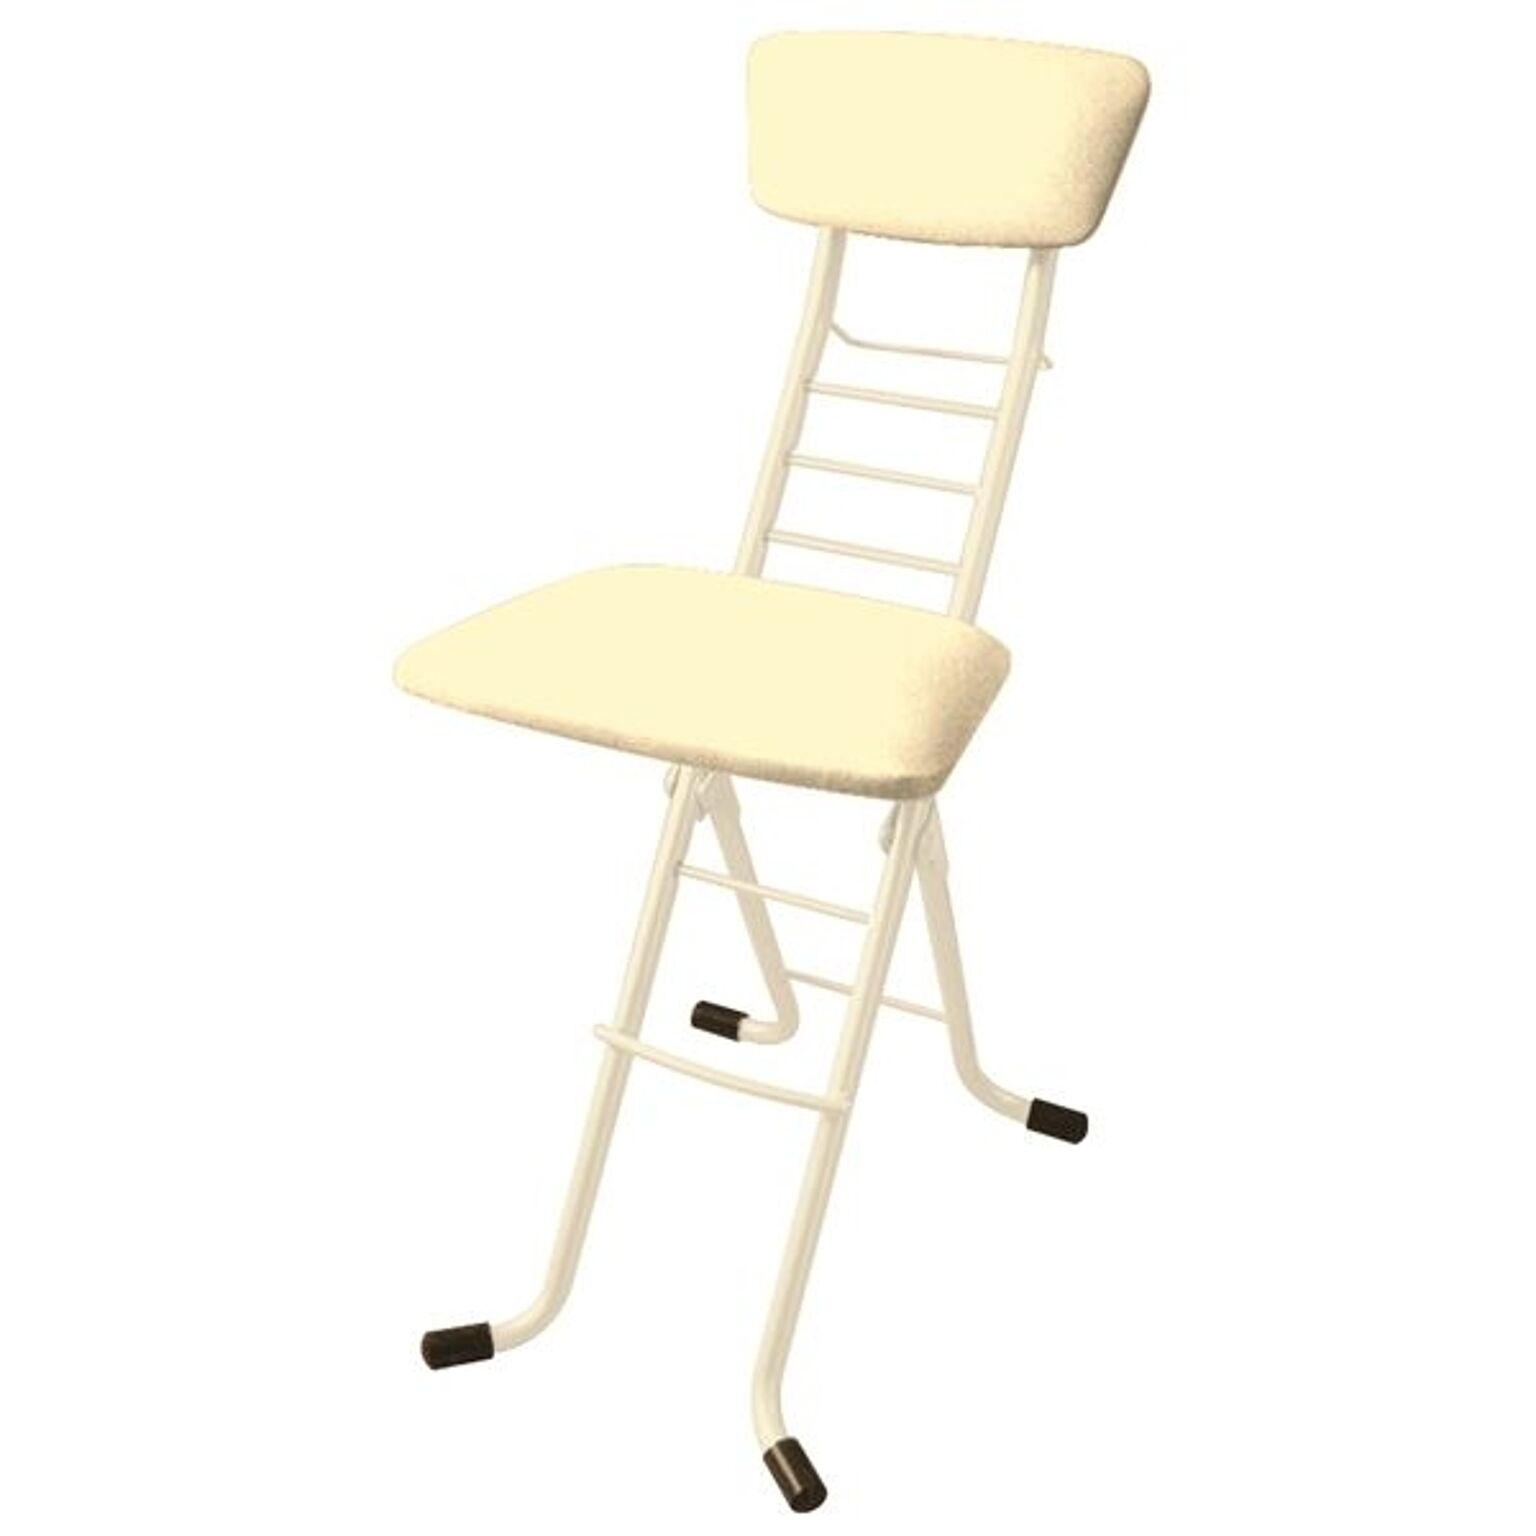 パイプ椅子リメイクのおすすめ商品とおしゃれな実例 ｜ RoomClip